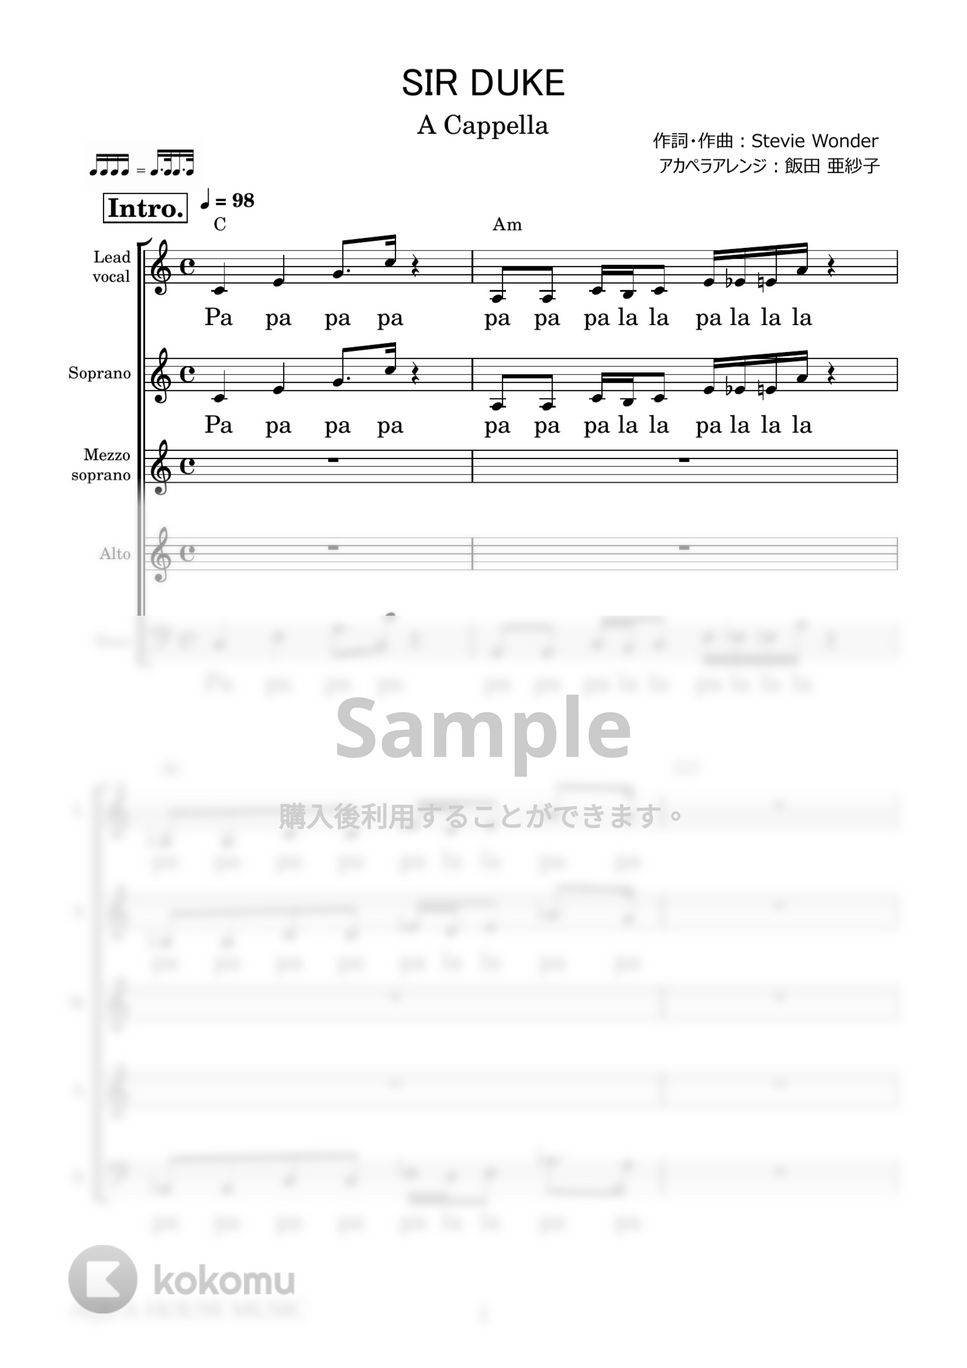 Stevie Wonder - SIR DUKE (アカペラ楽譜♪5声ボイパなし) by 飯田 亜紗子